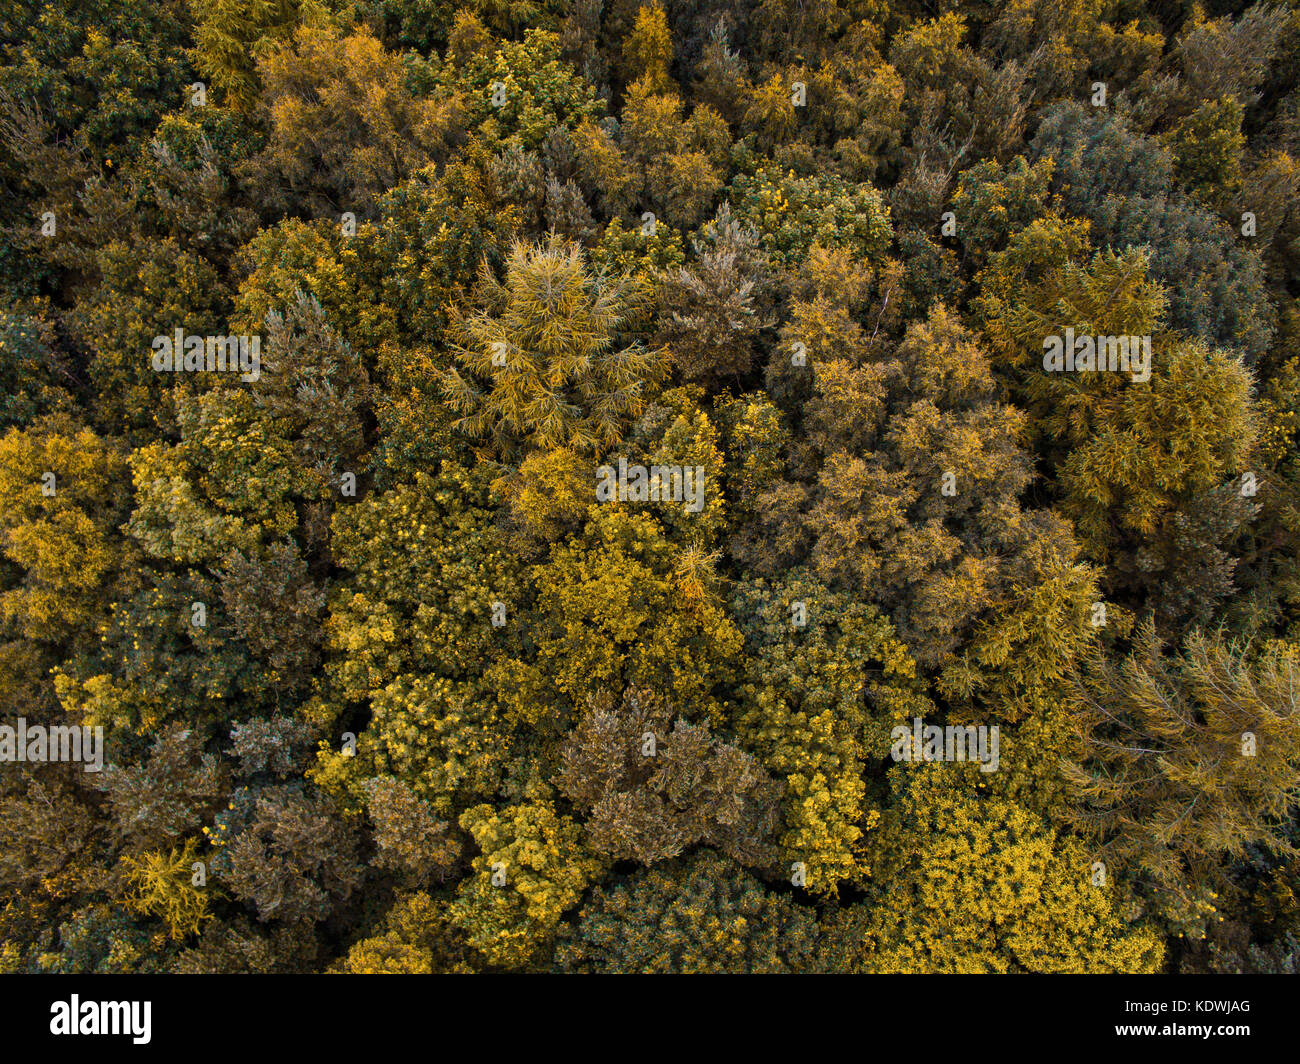 Voler au-dessus d'une belle forêt britannique avec un bois DJI phantom 3 drone standard prise de photos Banque D'Images